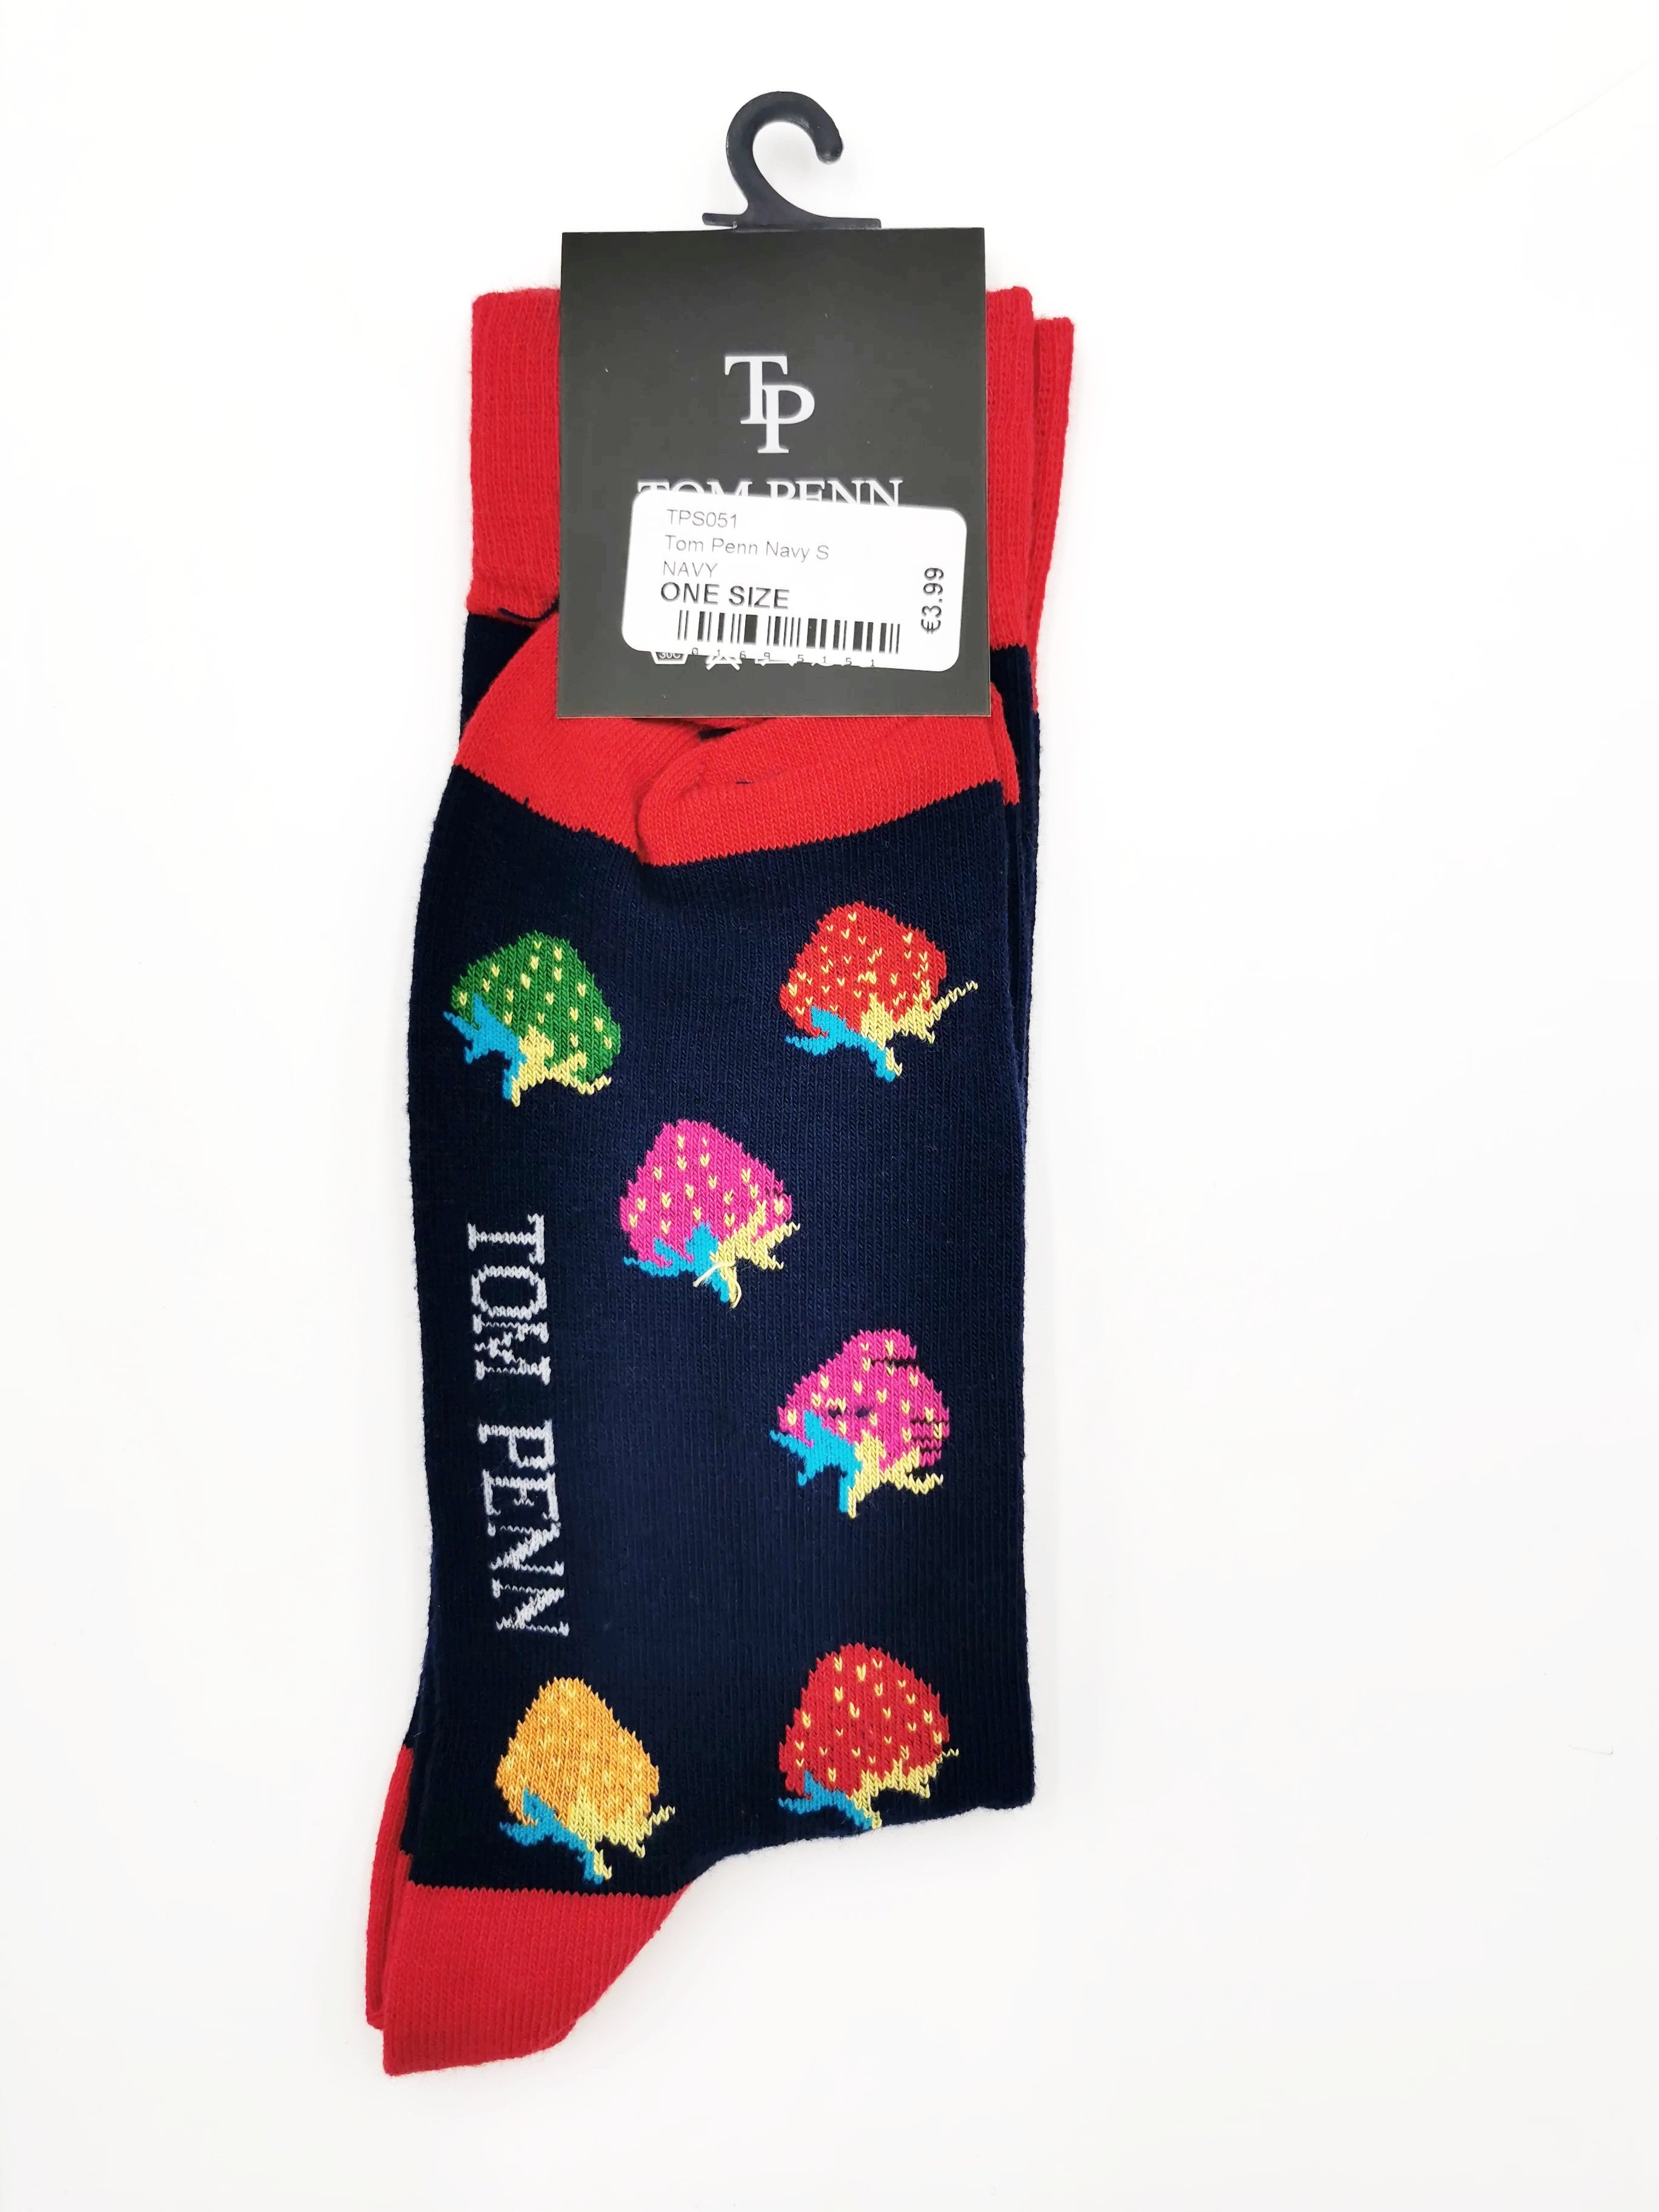 Tom Penn Navy Strawberry Design Men's sock